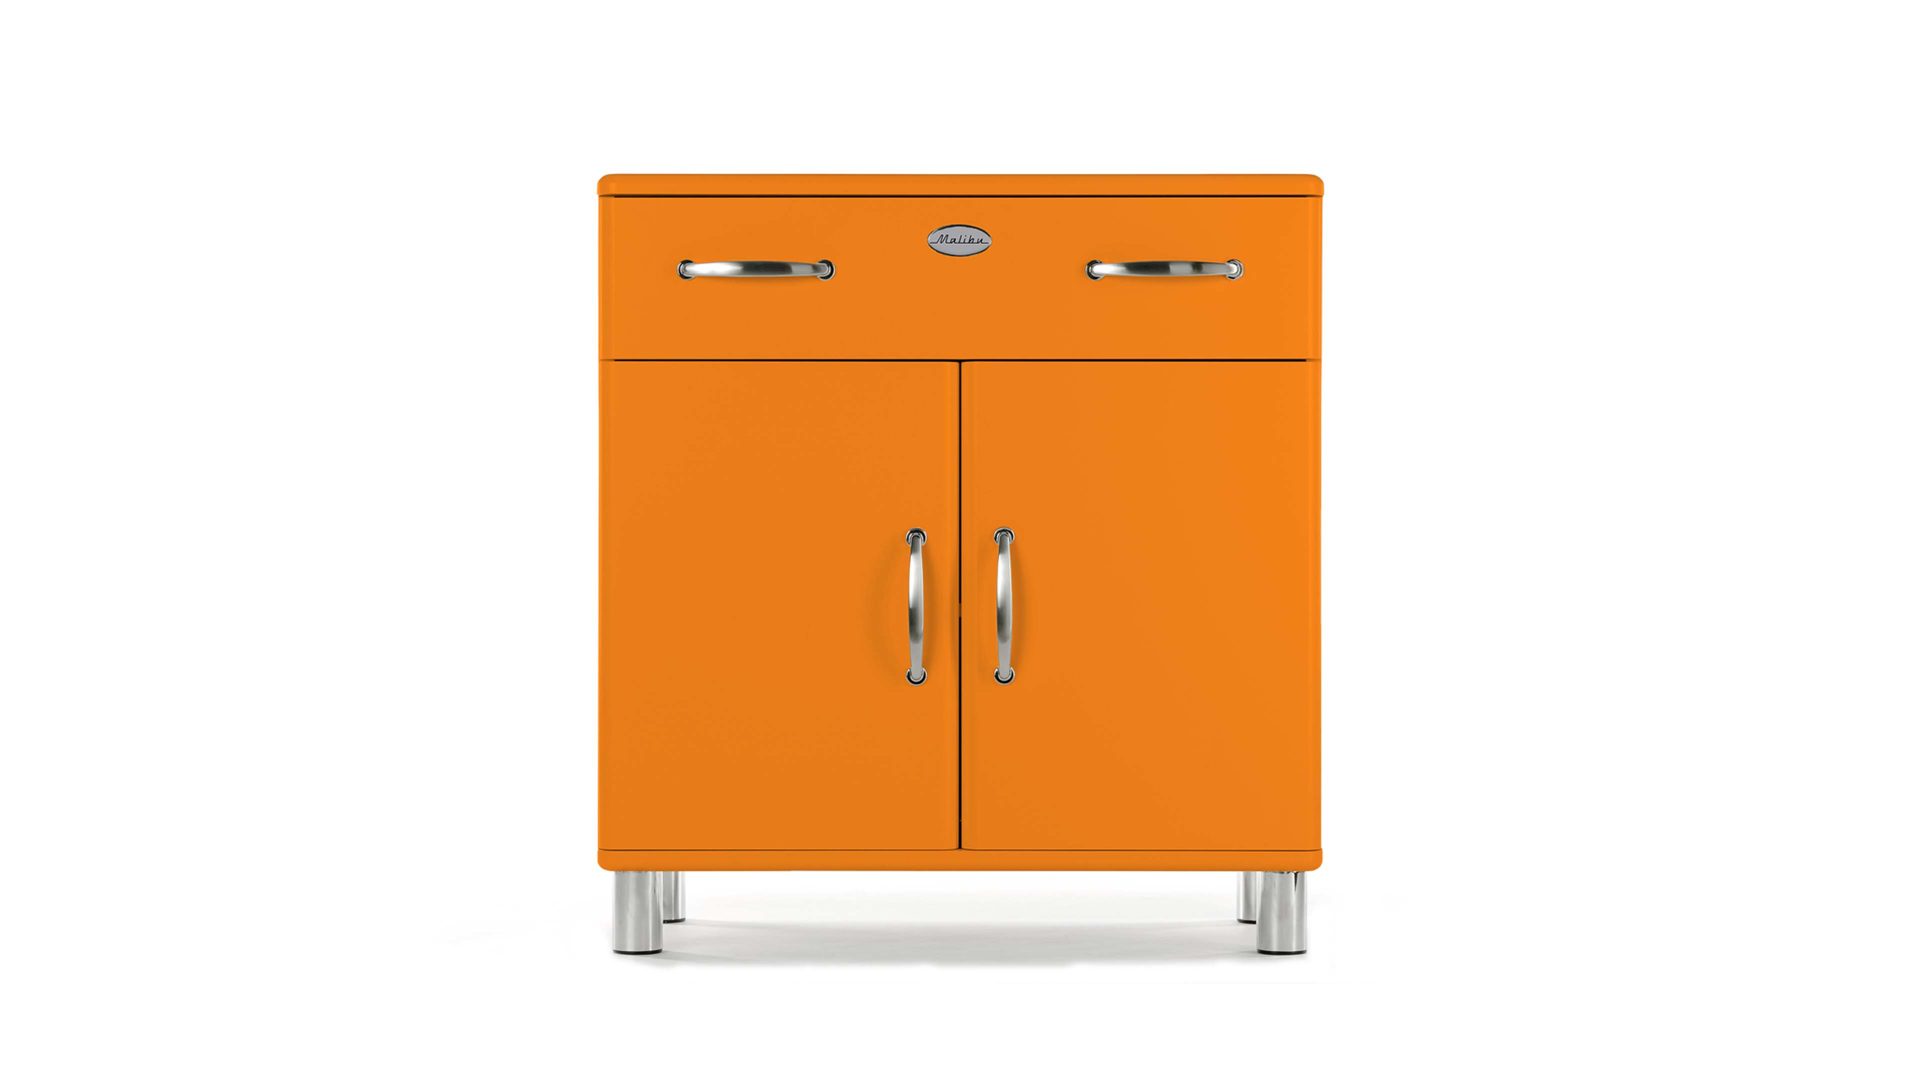 Kombikommode Tenzo aus Holz in Orange Kommode, ein Sideboard mit Stauraum und attraktiver Optik orangefarbene Lackoberflächen - eine Schublade, zwei Türen